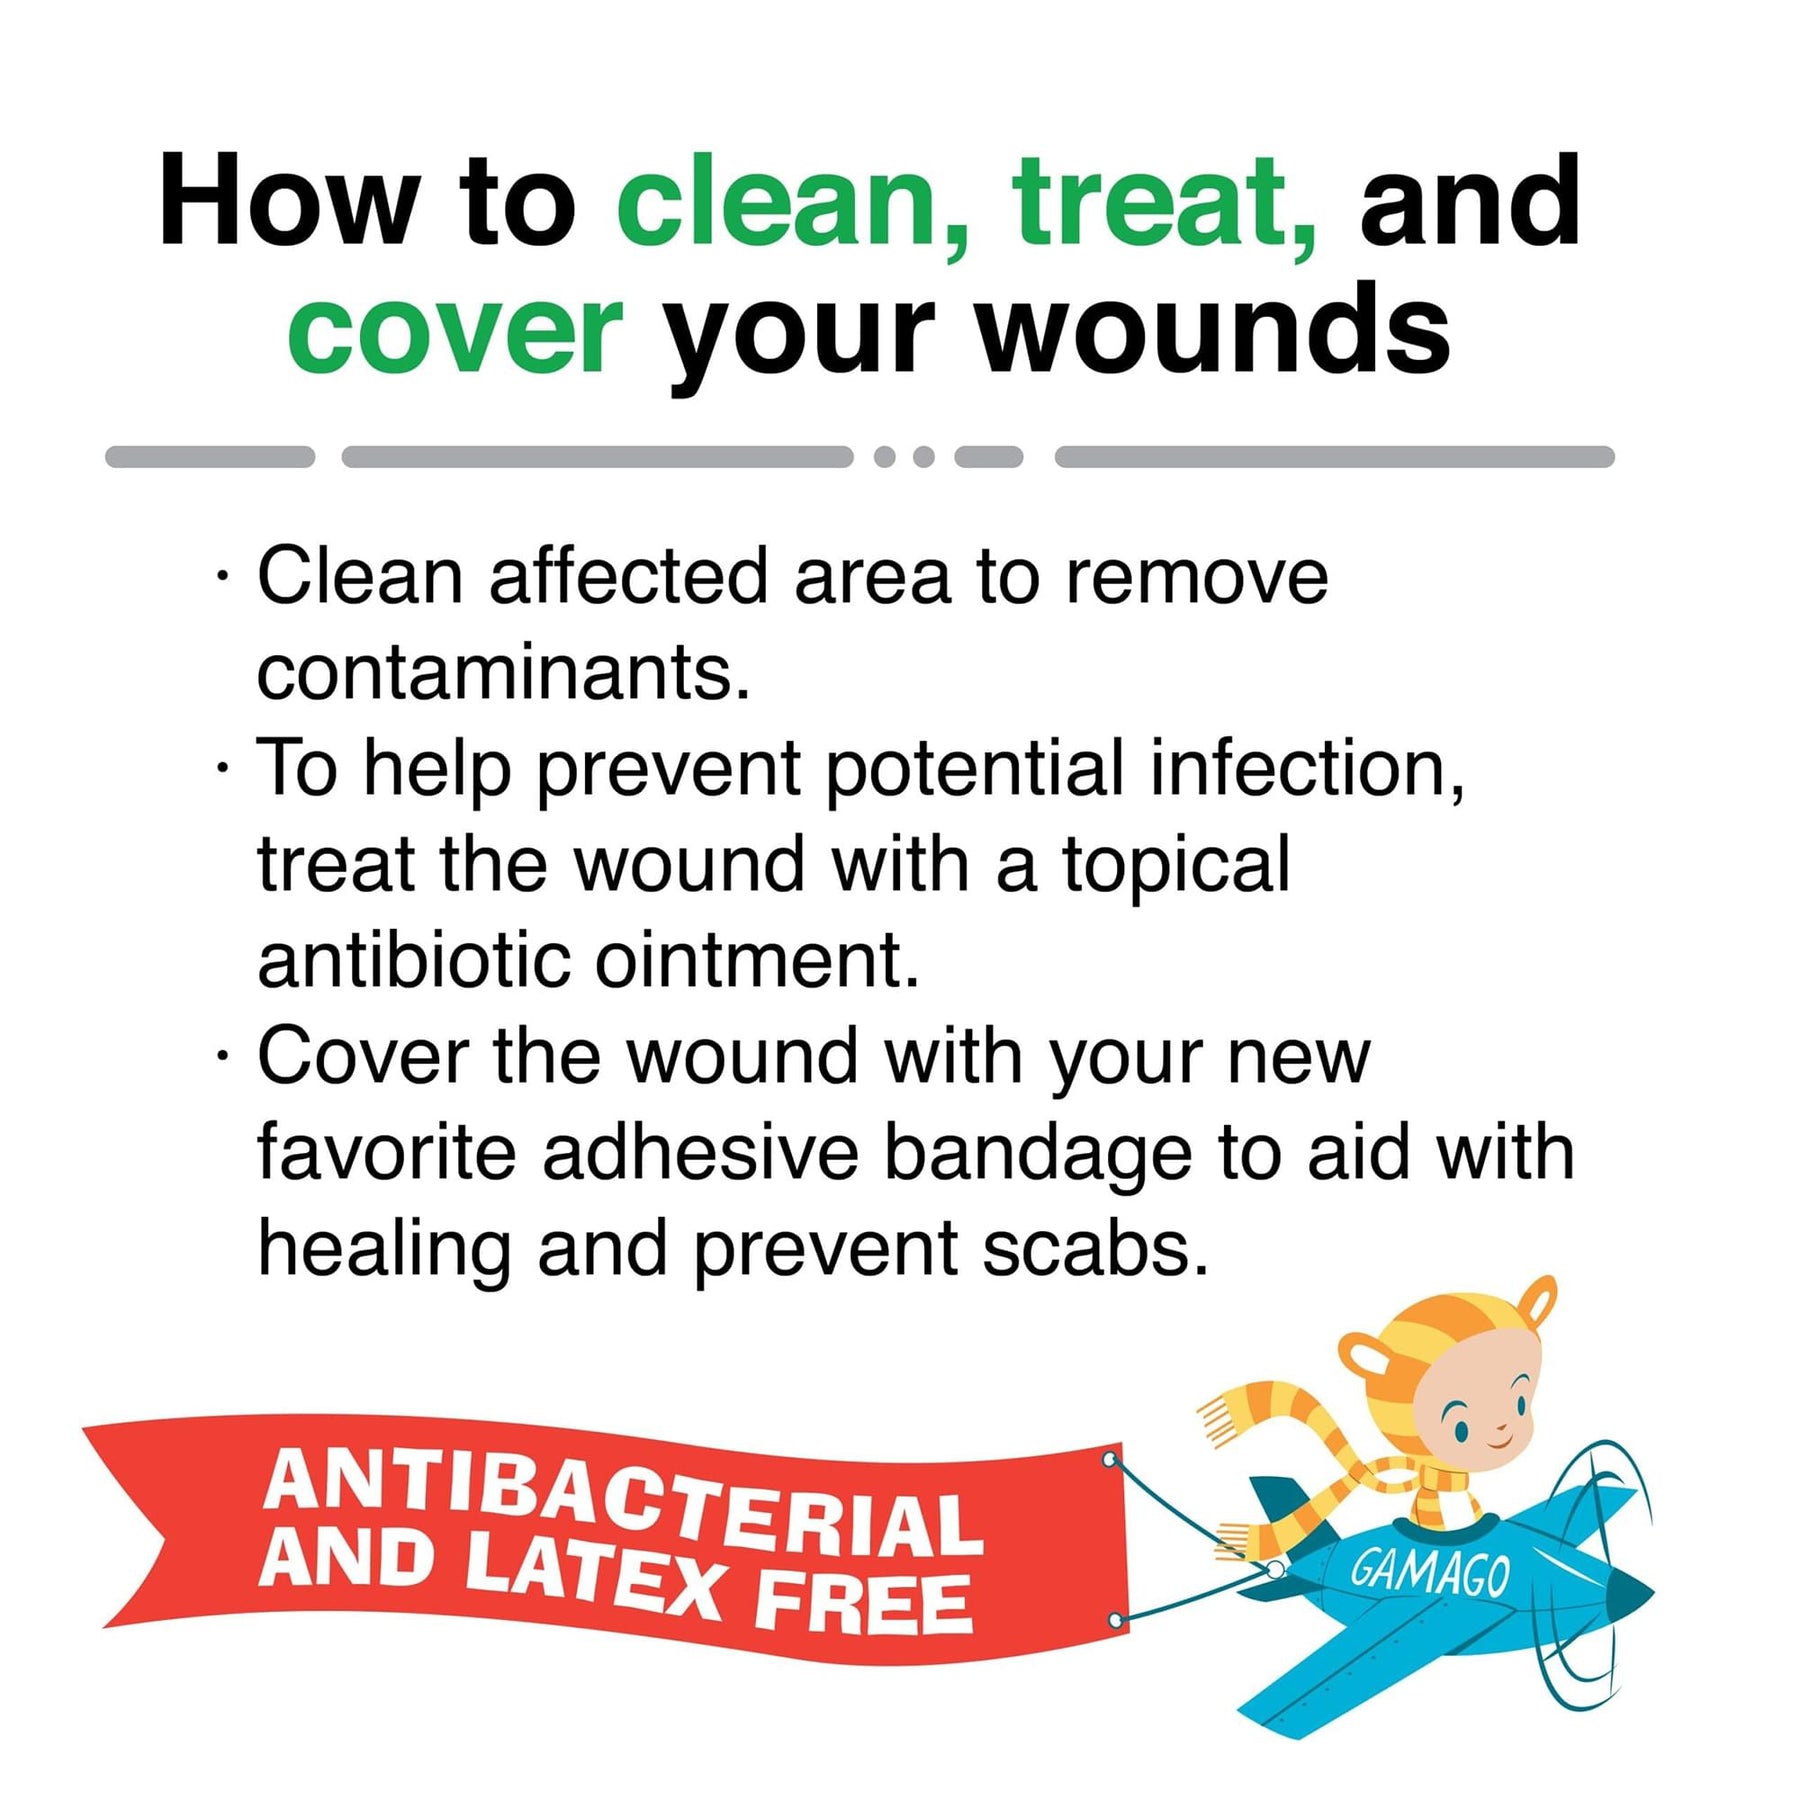 Axolotl Adhesive Bandages | 20 Count